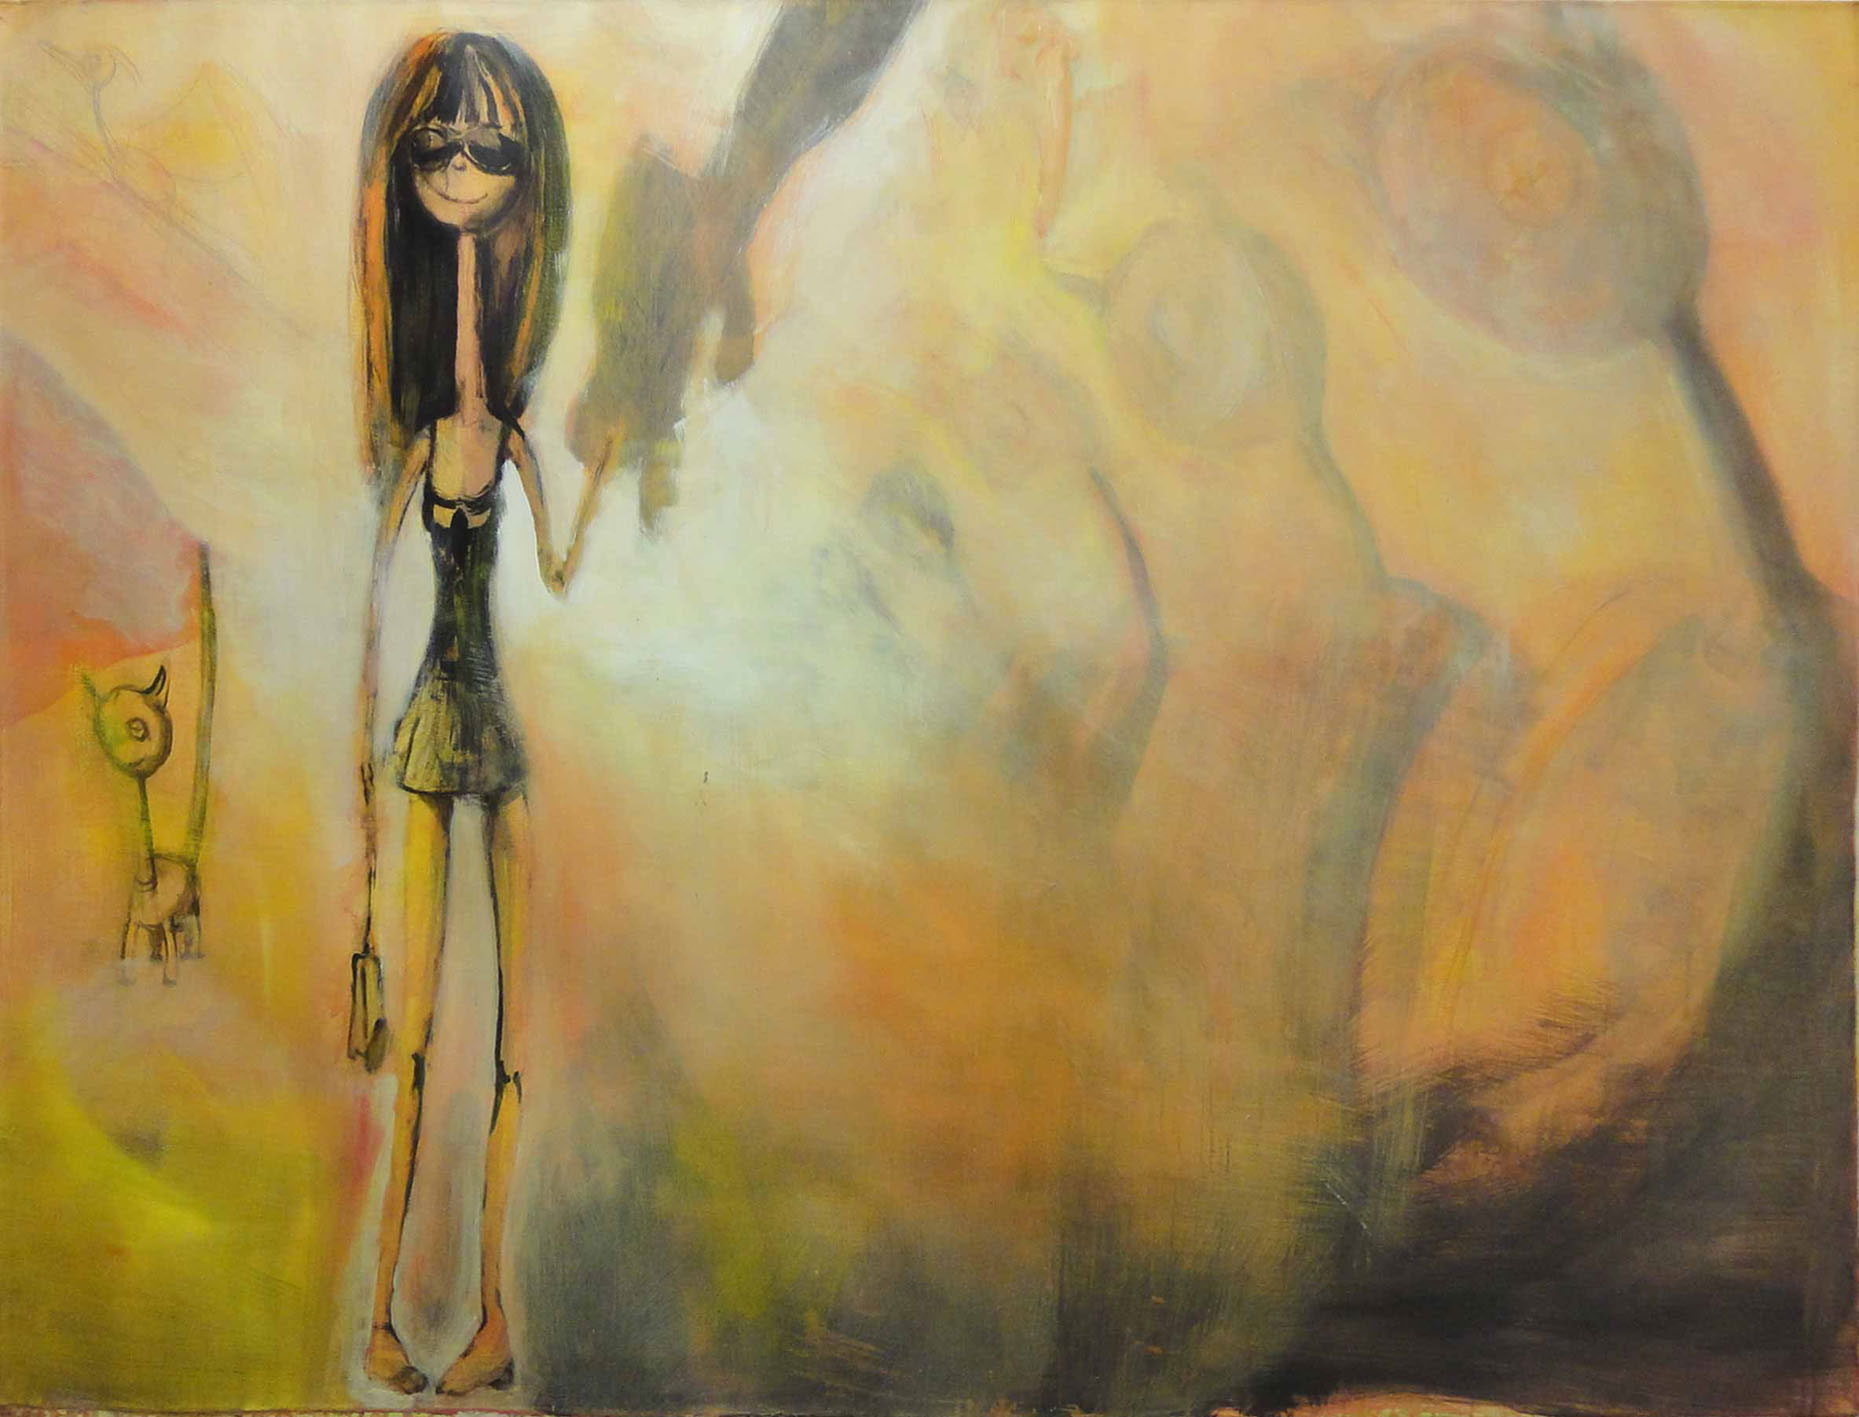 Die Welt der Michelle Doré 1, Acryl auf Leinwand, 140 x 190 cm, Haider Al-Zubaidi, 2009